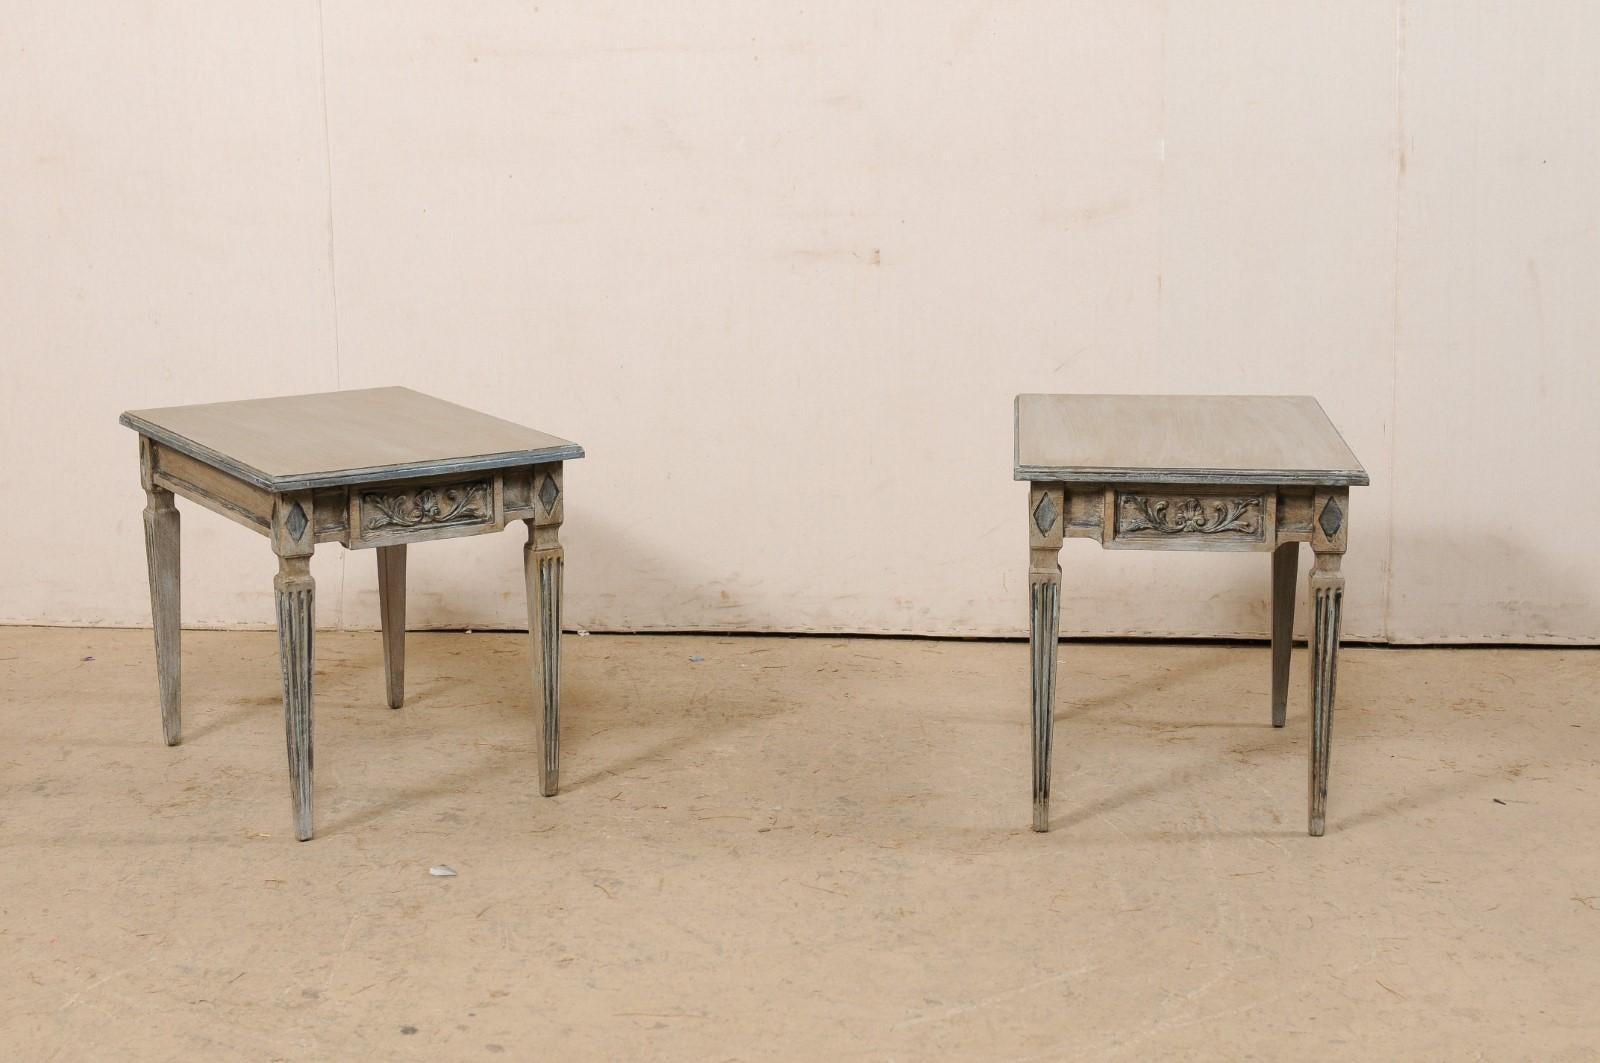 Paire de tables d'appoint italiennes en bois sculpté et peint. Cette paire de tables italiennes d'époque présente des plateaux rectangulaires qui surplombent un tablier avec des accents de diamant au-dessus des pieds à chaque coin, et qui sont